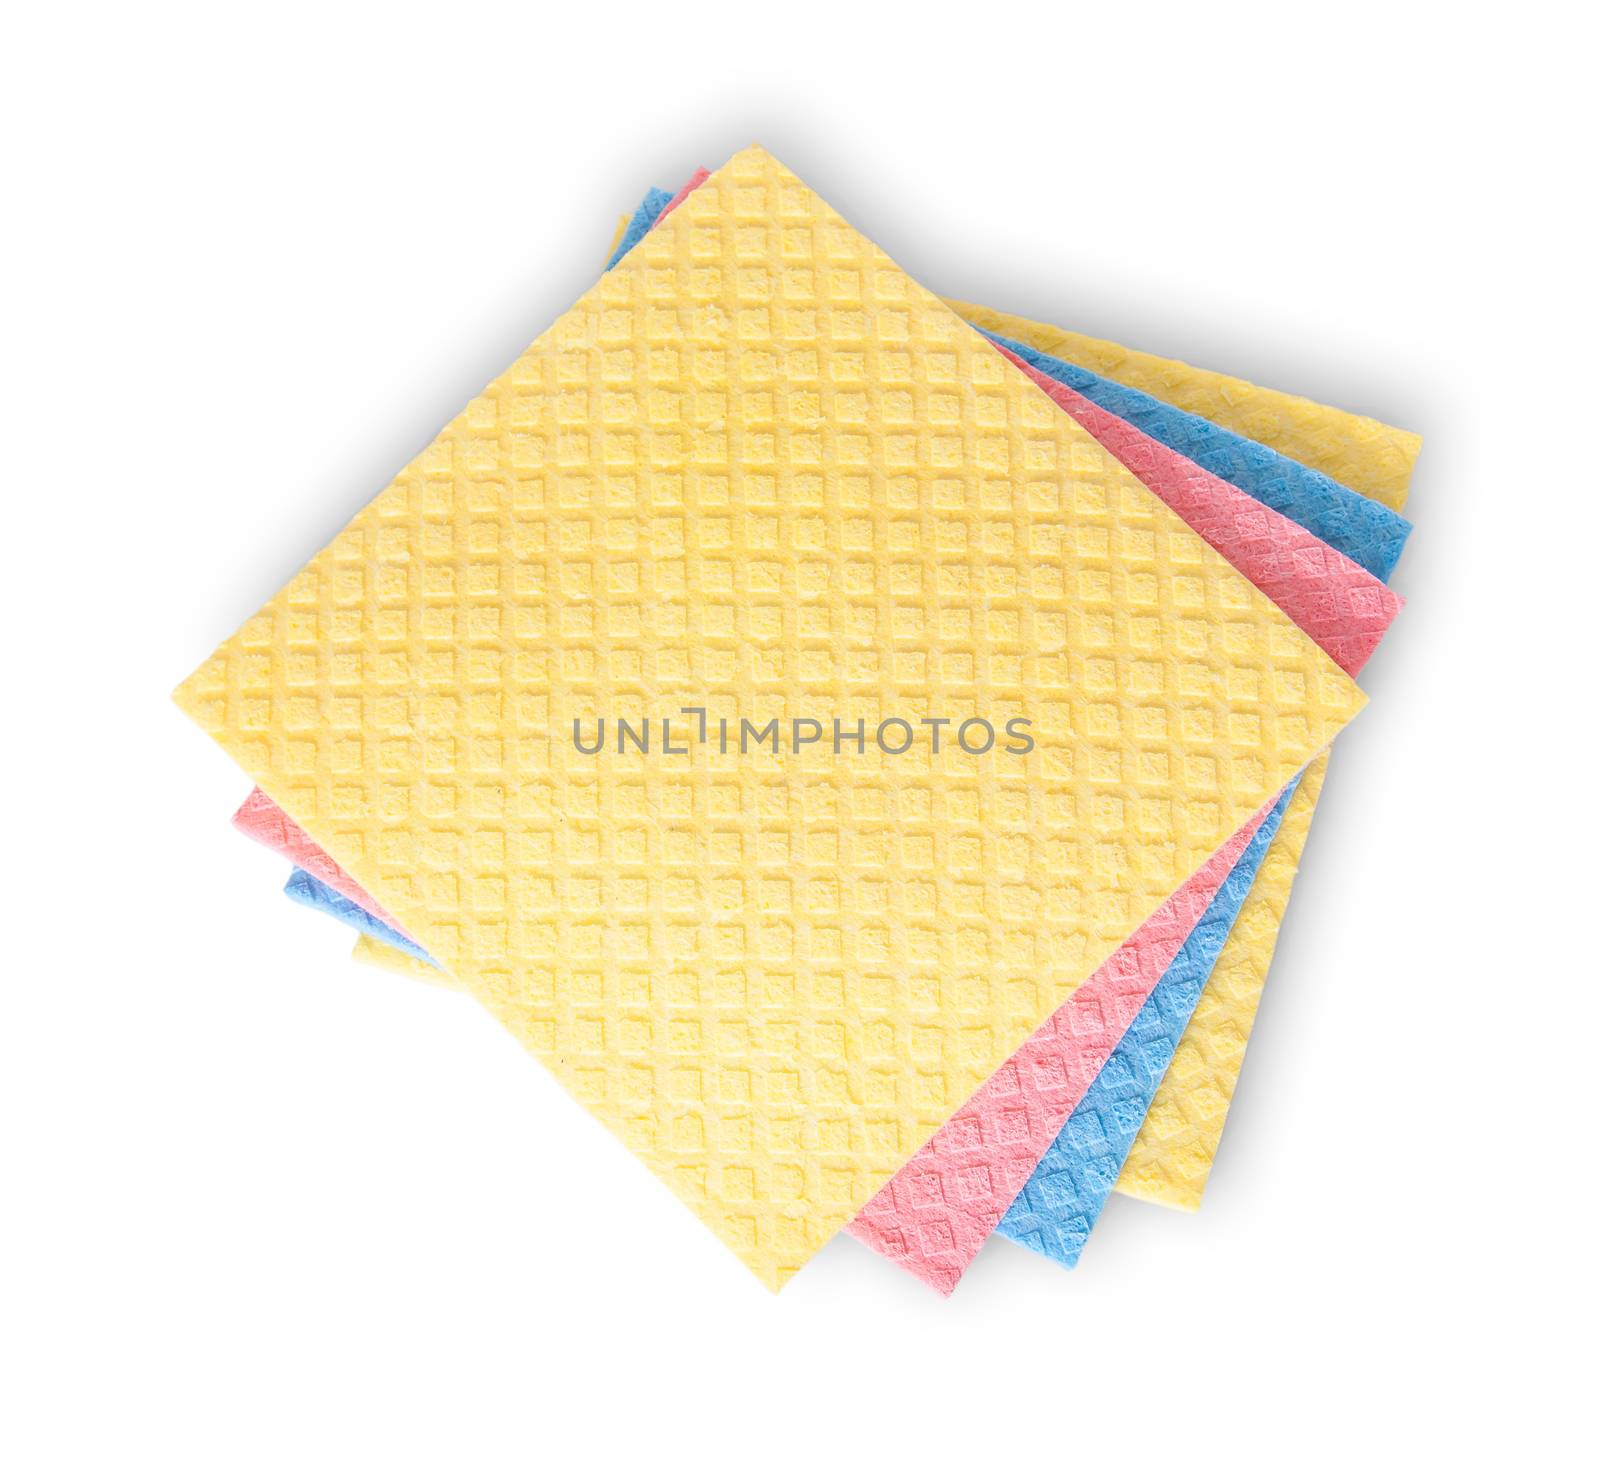 Multicolored sponges for dishwashing isolated on white background